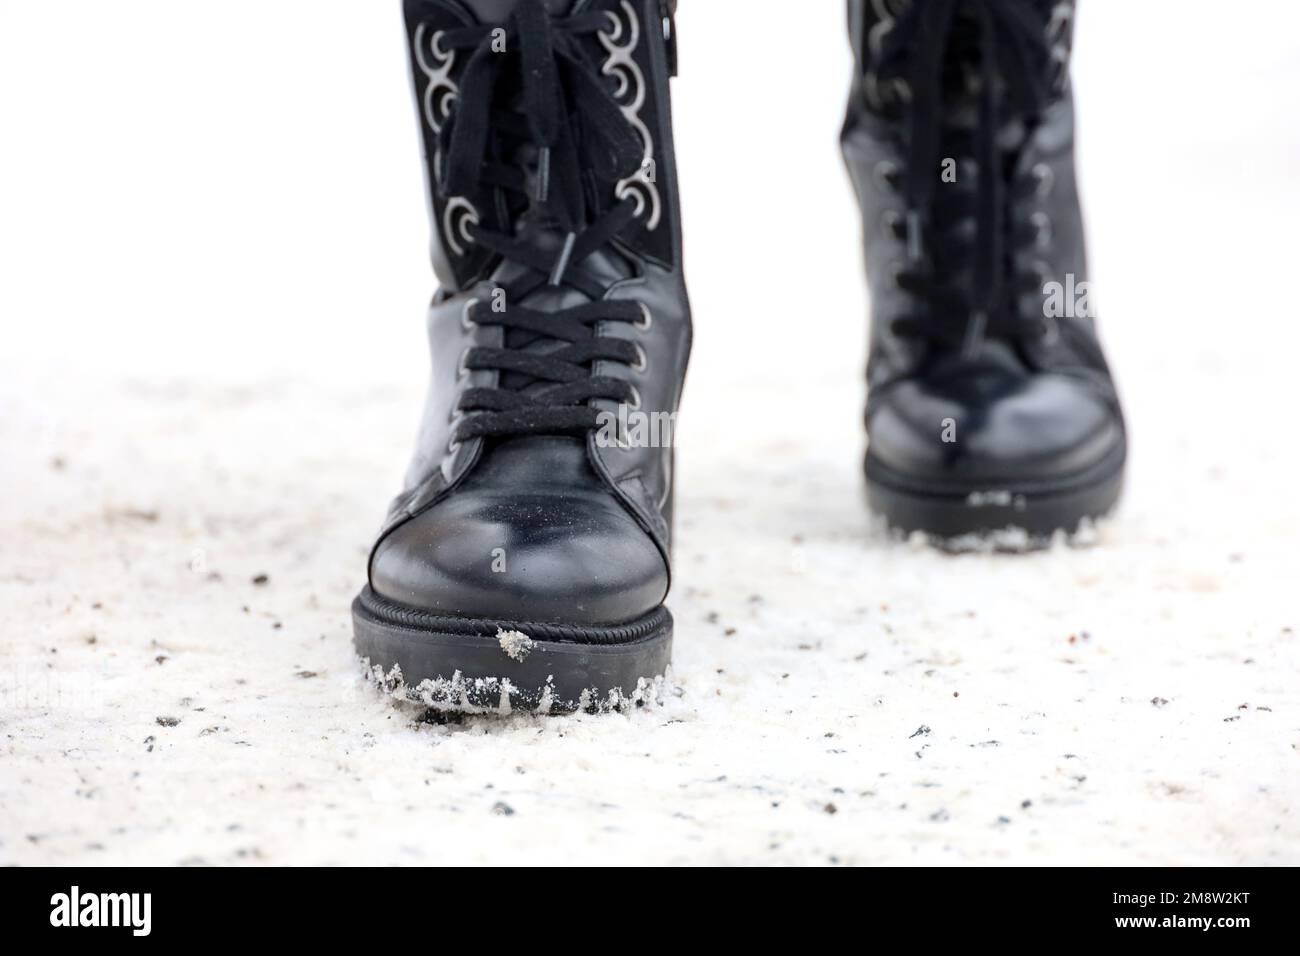 Weibliche Beine in schwarzen Lederstiefeln mit Schnürung auf einem Schnee, der mit einer Eisschutzmischung bedeckt ist. Frau, die auf der Winterstraße spaziert, warme Schuhe für kaltes Wetter Stockfoto